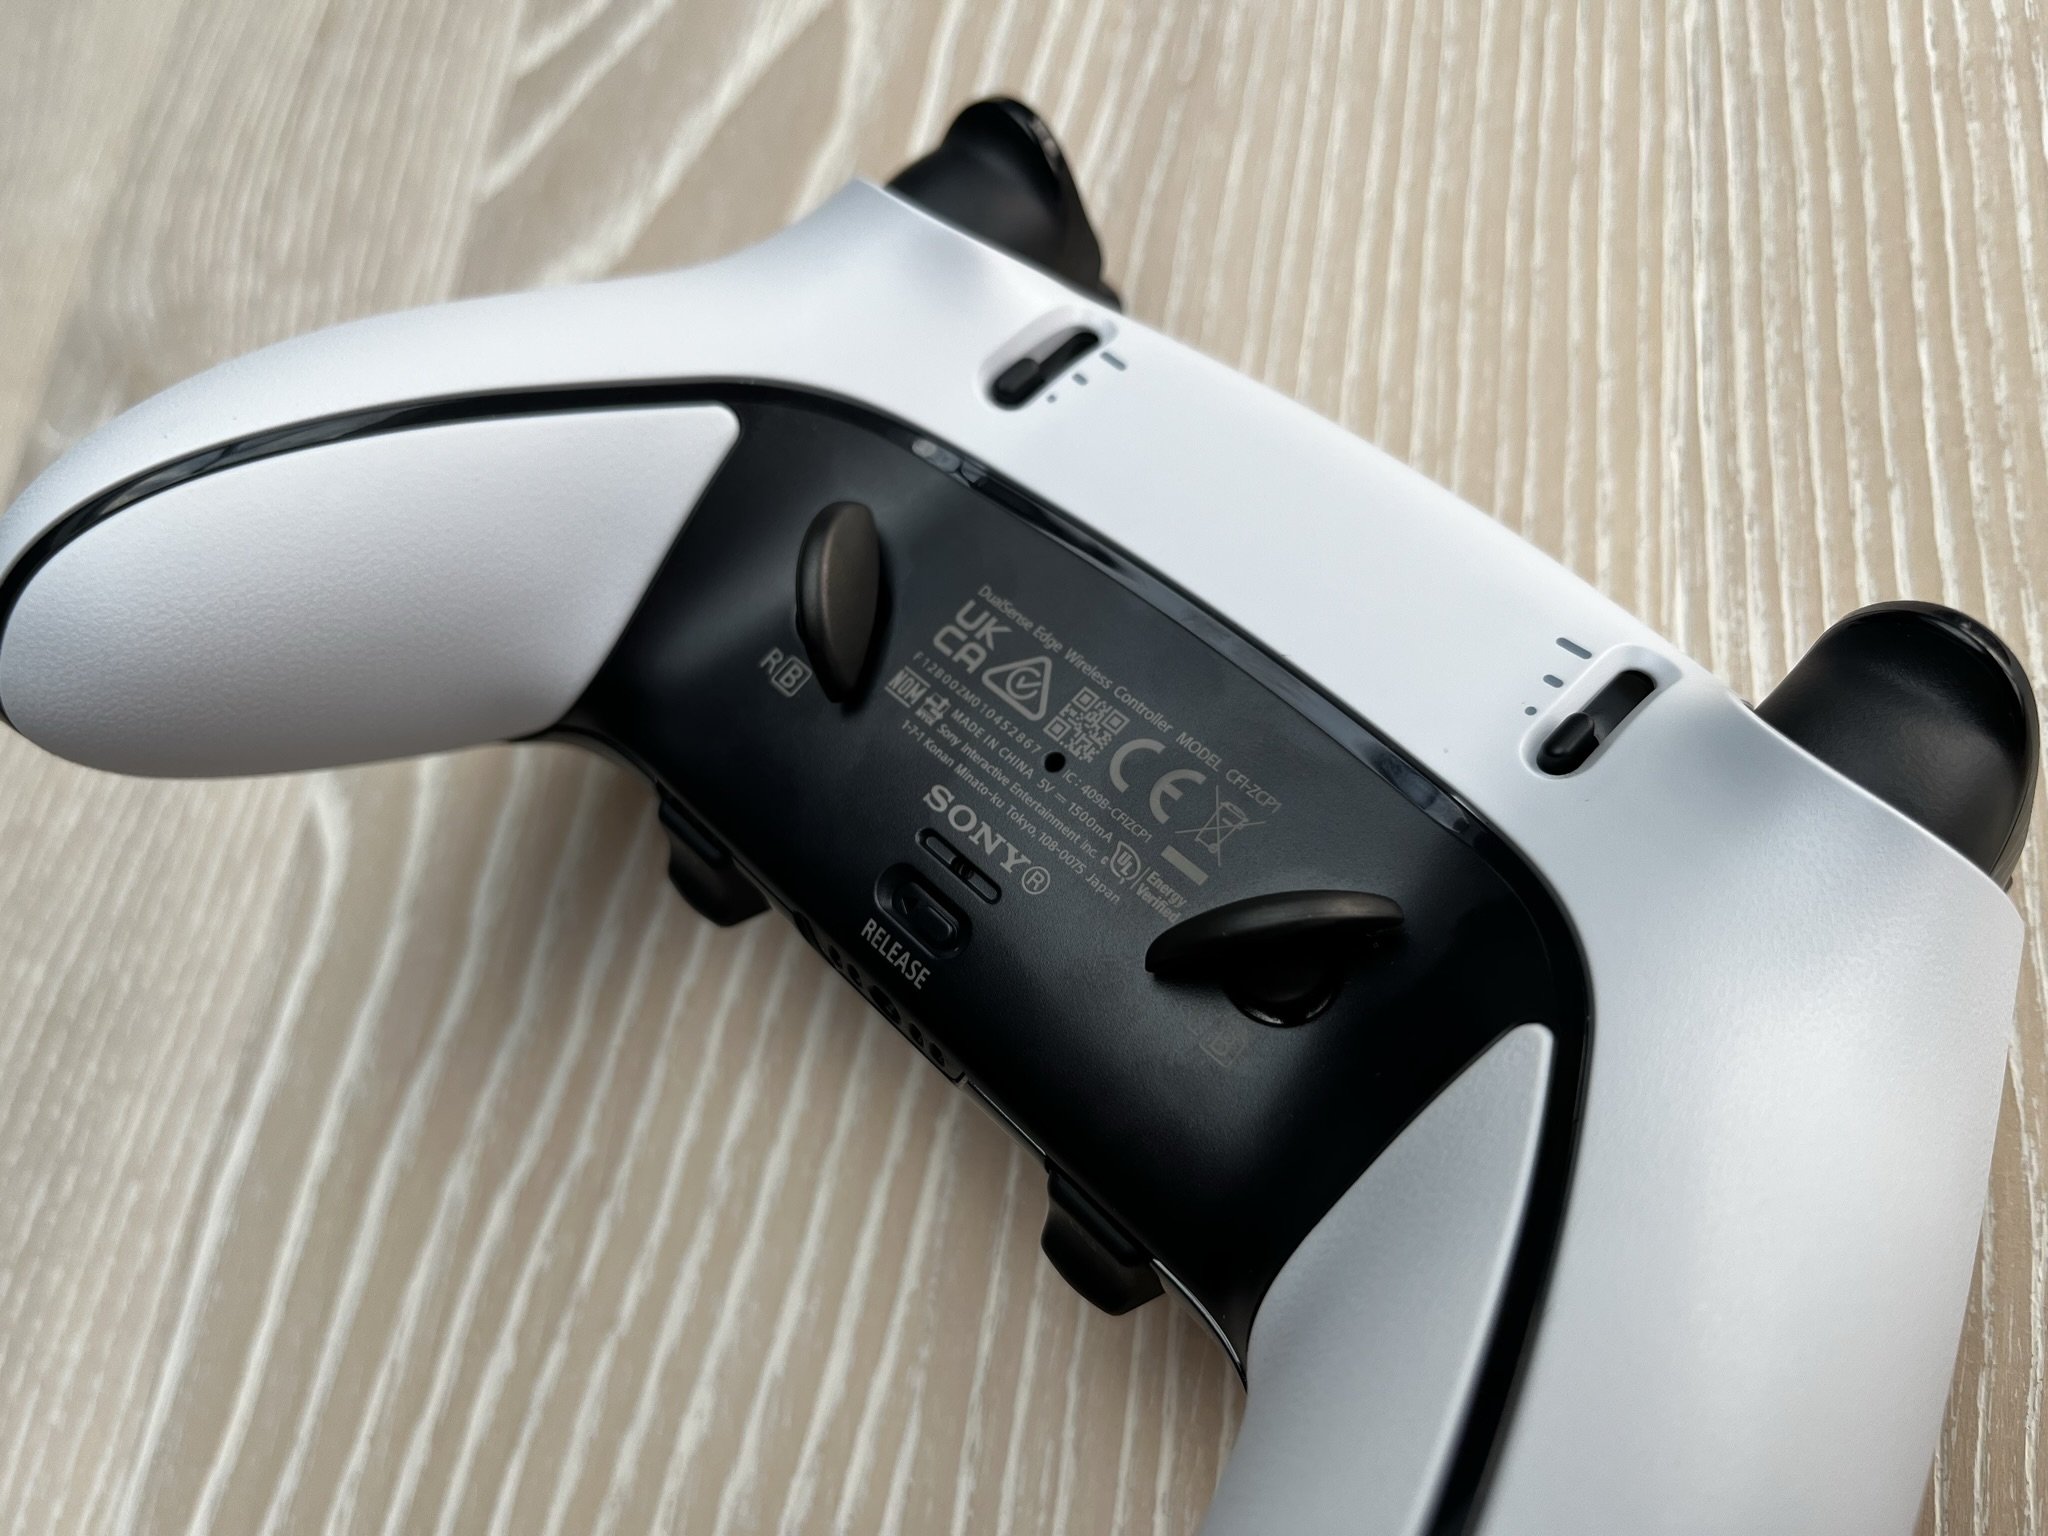 PS5 DualSense Modular Controller Review: Luxe Game Changer